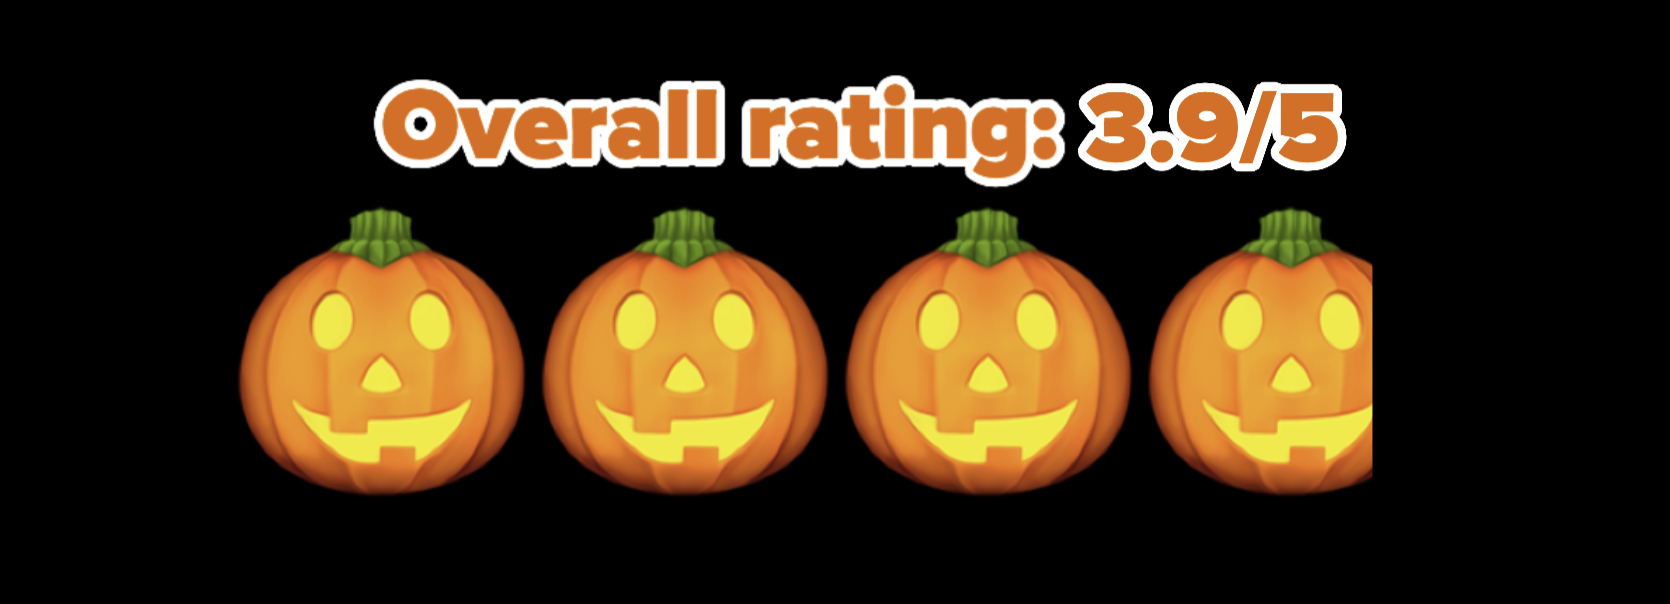 3.9/5 pumpkin rating